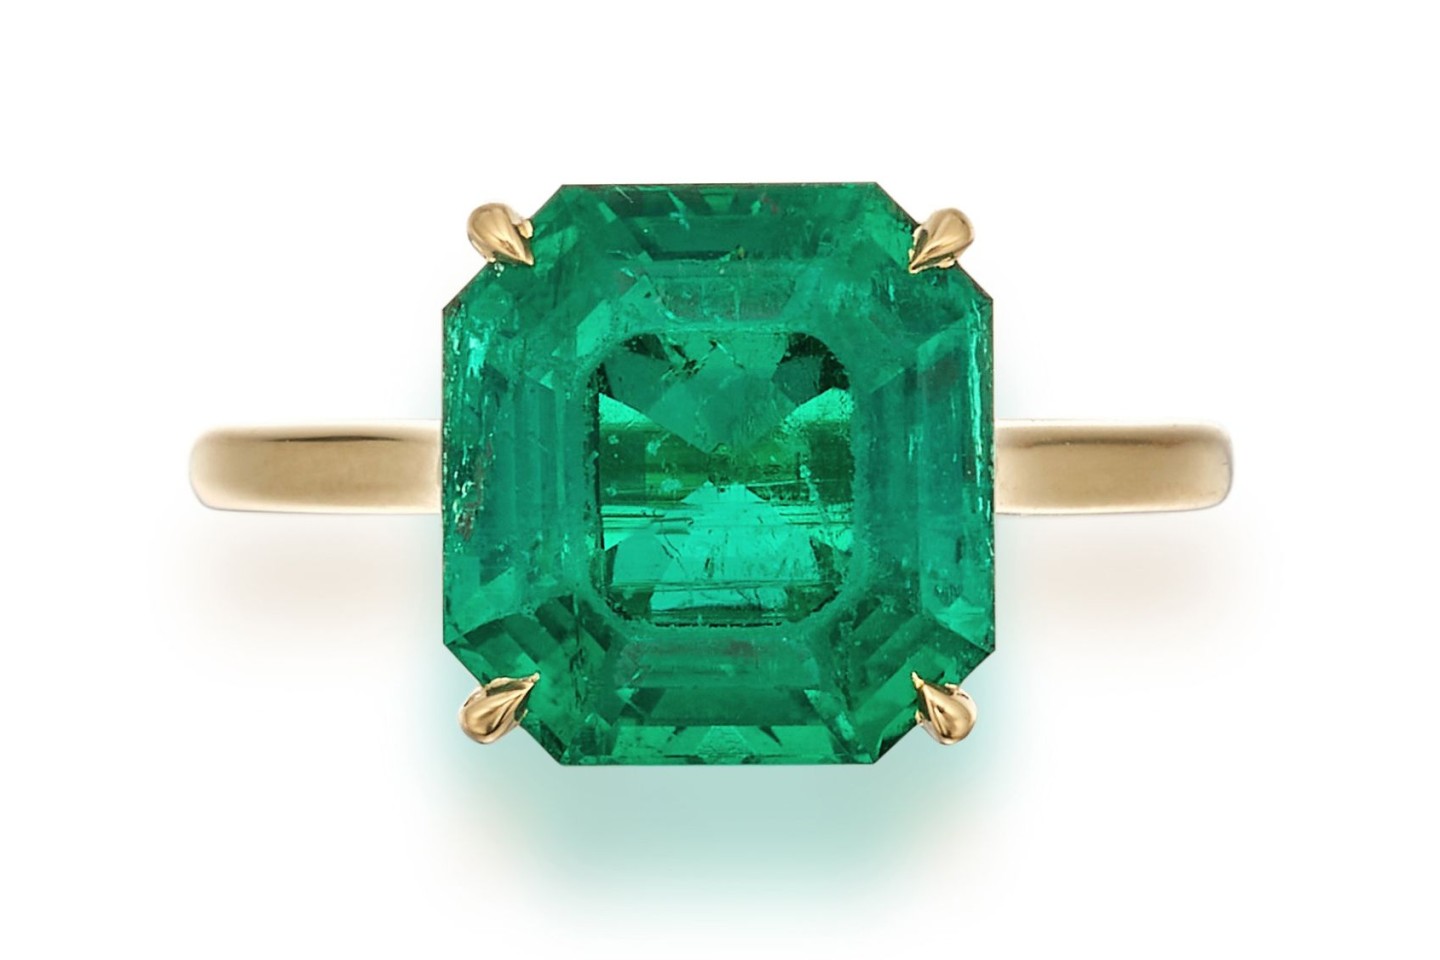 Dieser Smaragd hat schon eine lange Reise hinter sich. Beim Auktionshaus Sotheby's soll er nun einen neuen Besitzer finden.